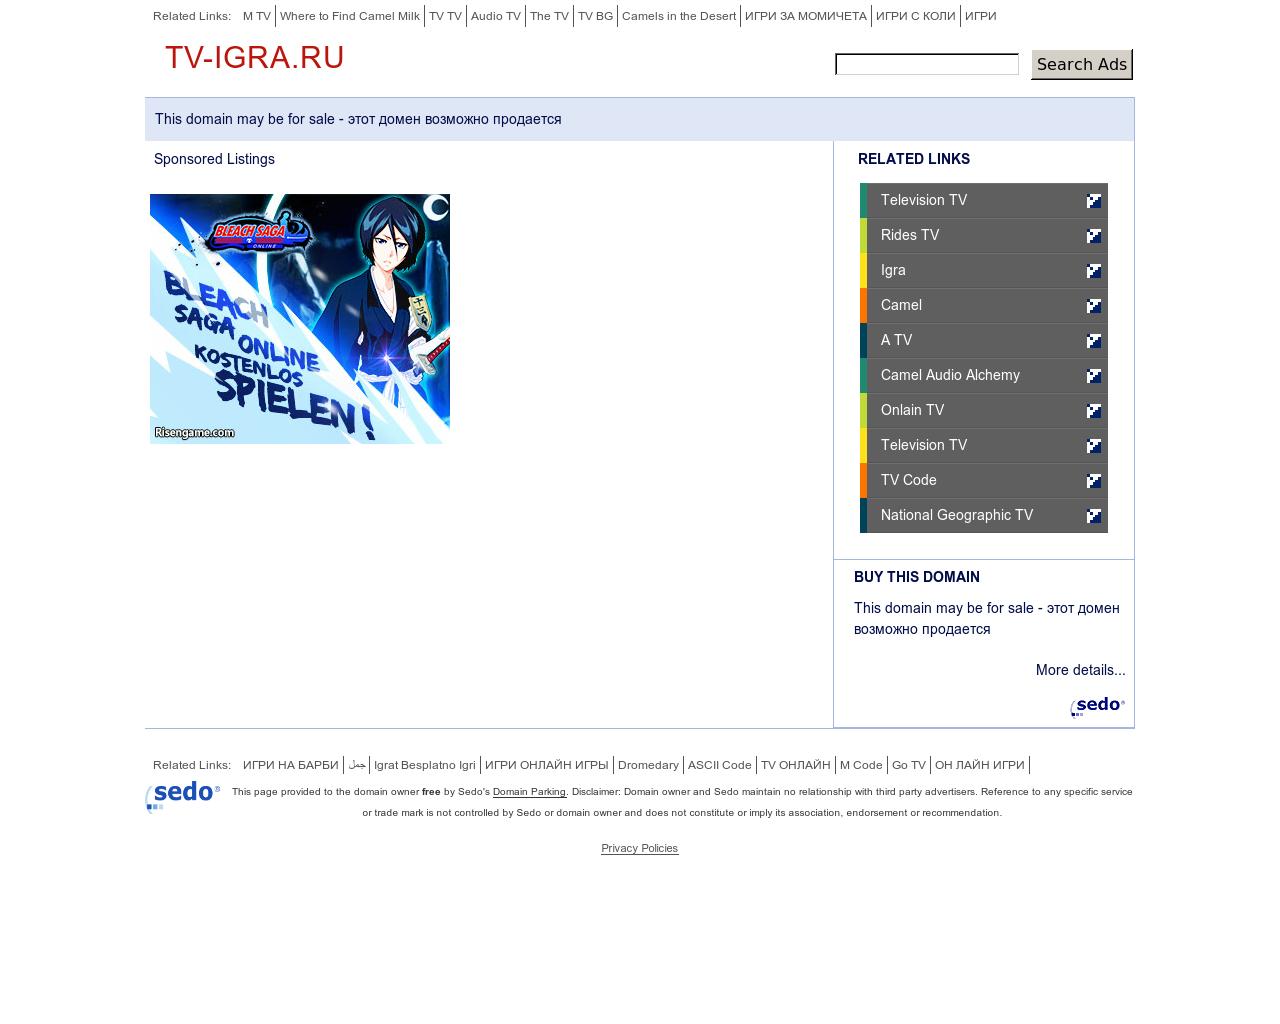 Изображение сайта tv-igra.ru в разрешении 1280x1024